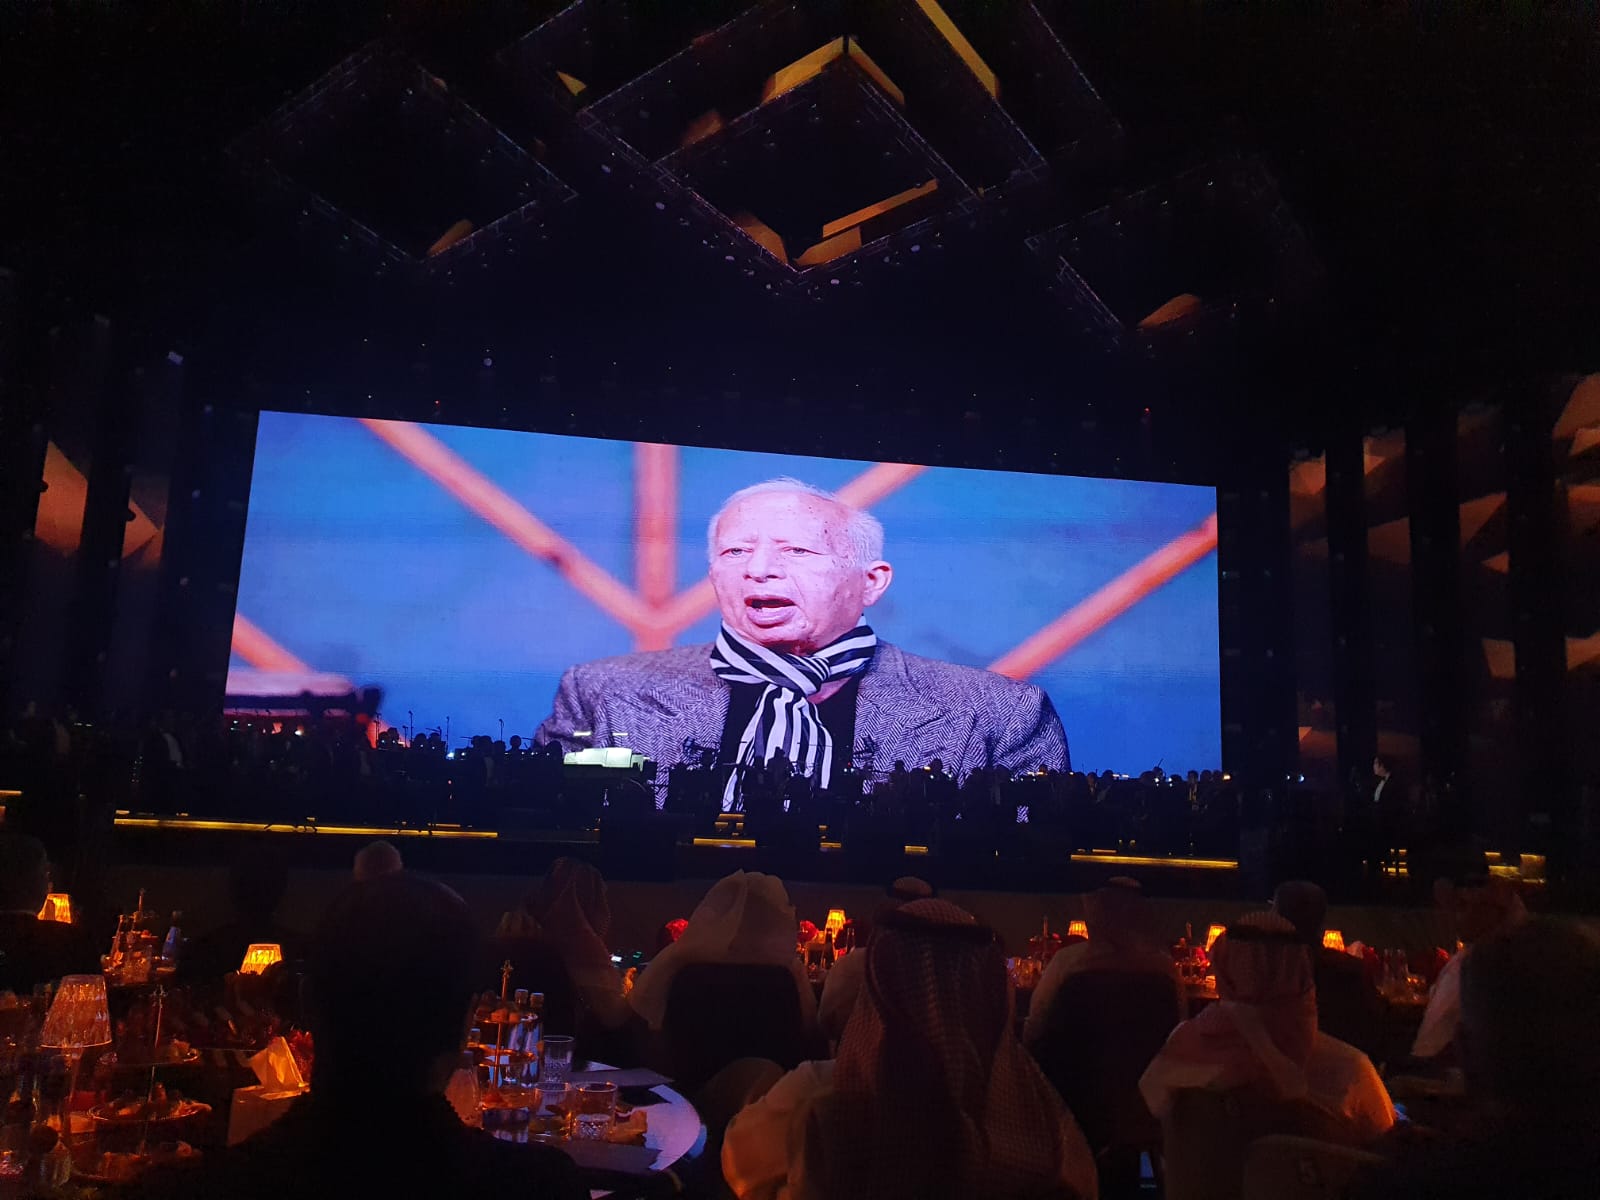 أنغام تقدم حفل تكريم الموسيقار هانى شنودة بالرياض وعرض فيلم تسجيلى عن حياته (2)